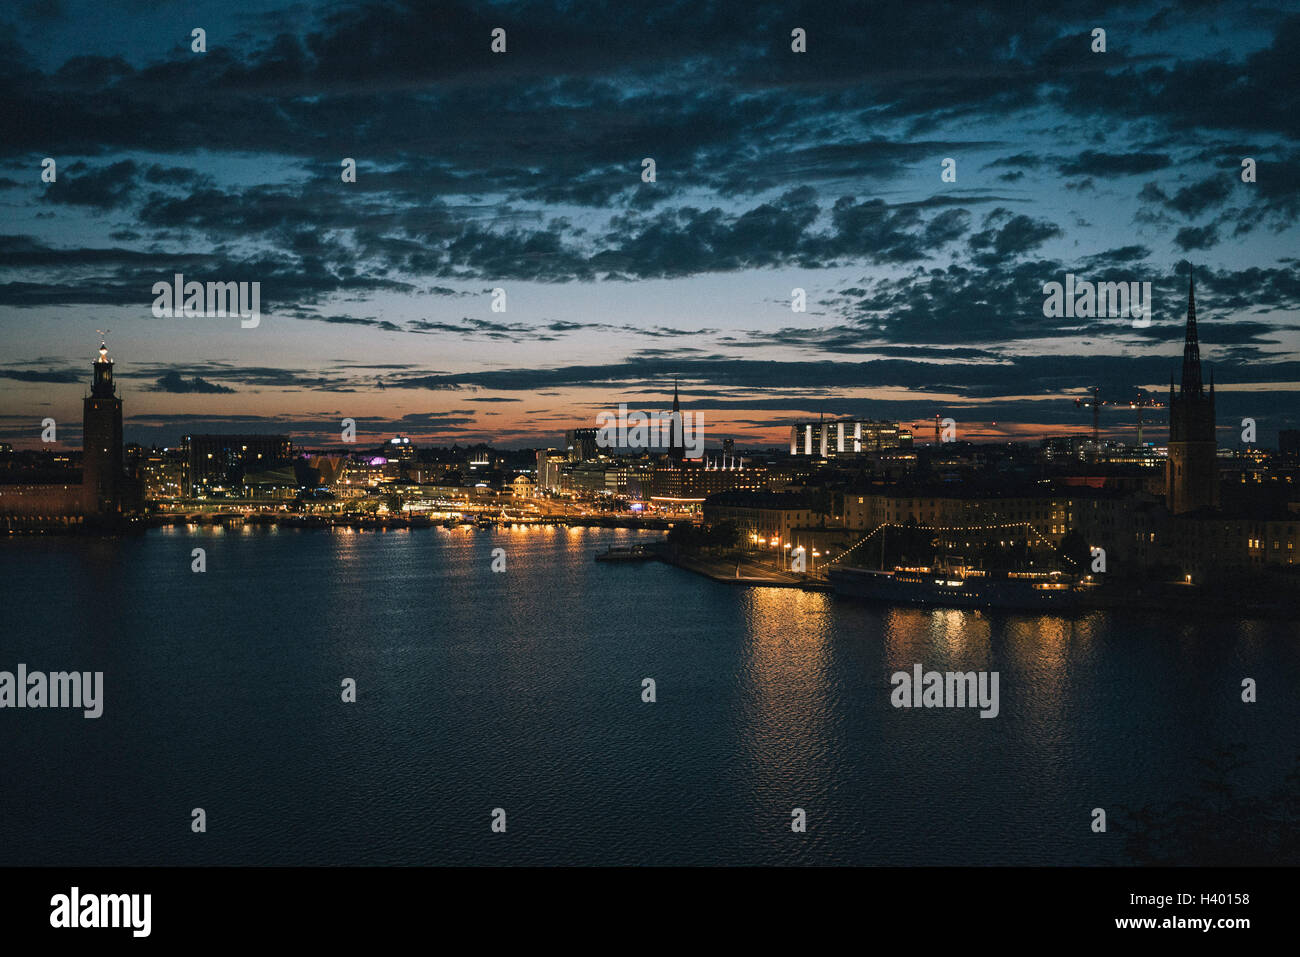 Vista panoramica del lungomare e la città illuminata contro il cielo al tramonto, Stoccolma, Svezia Foto Stock